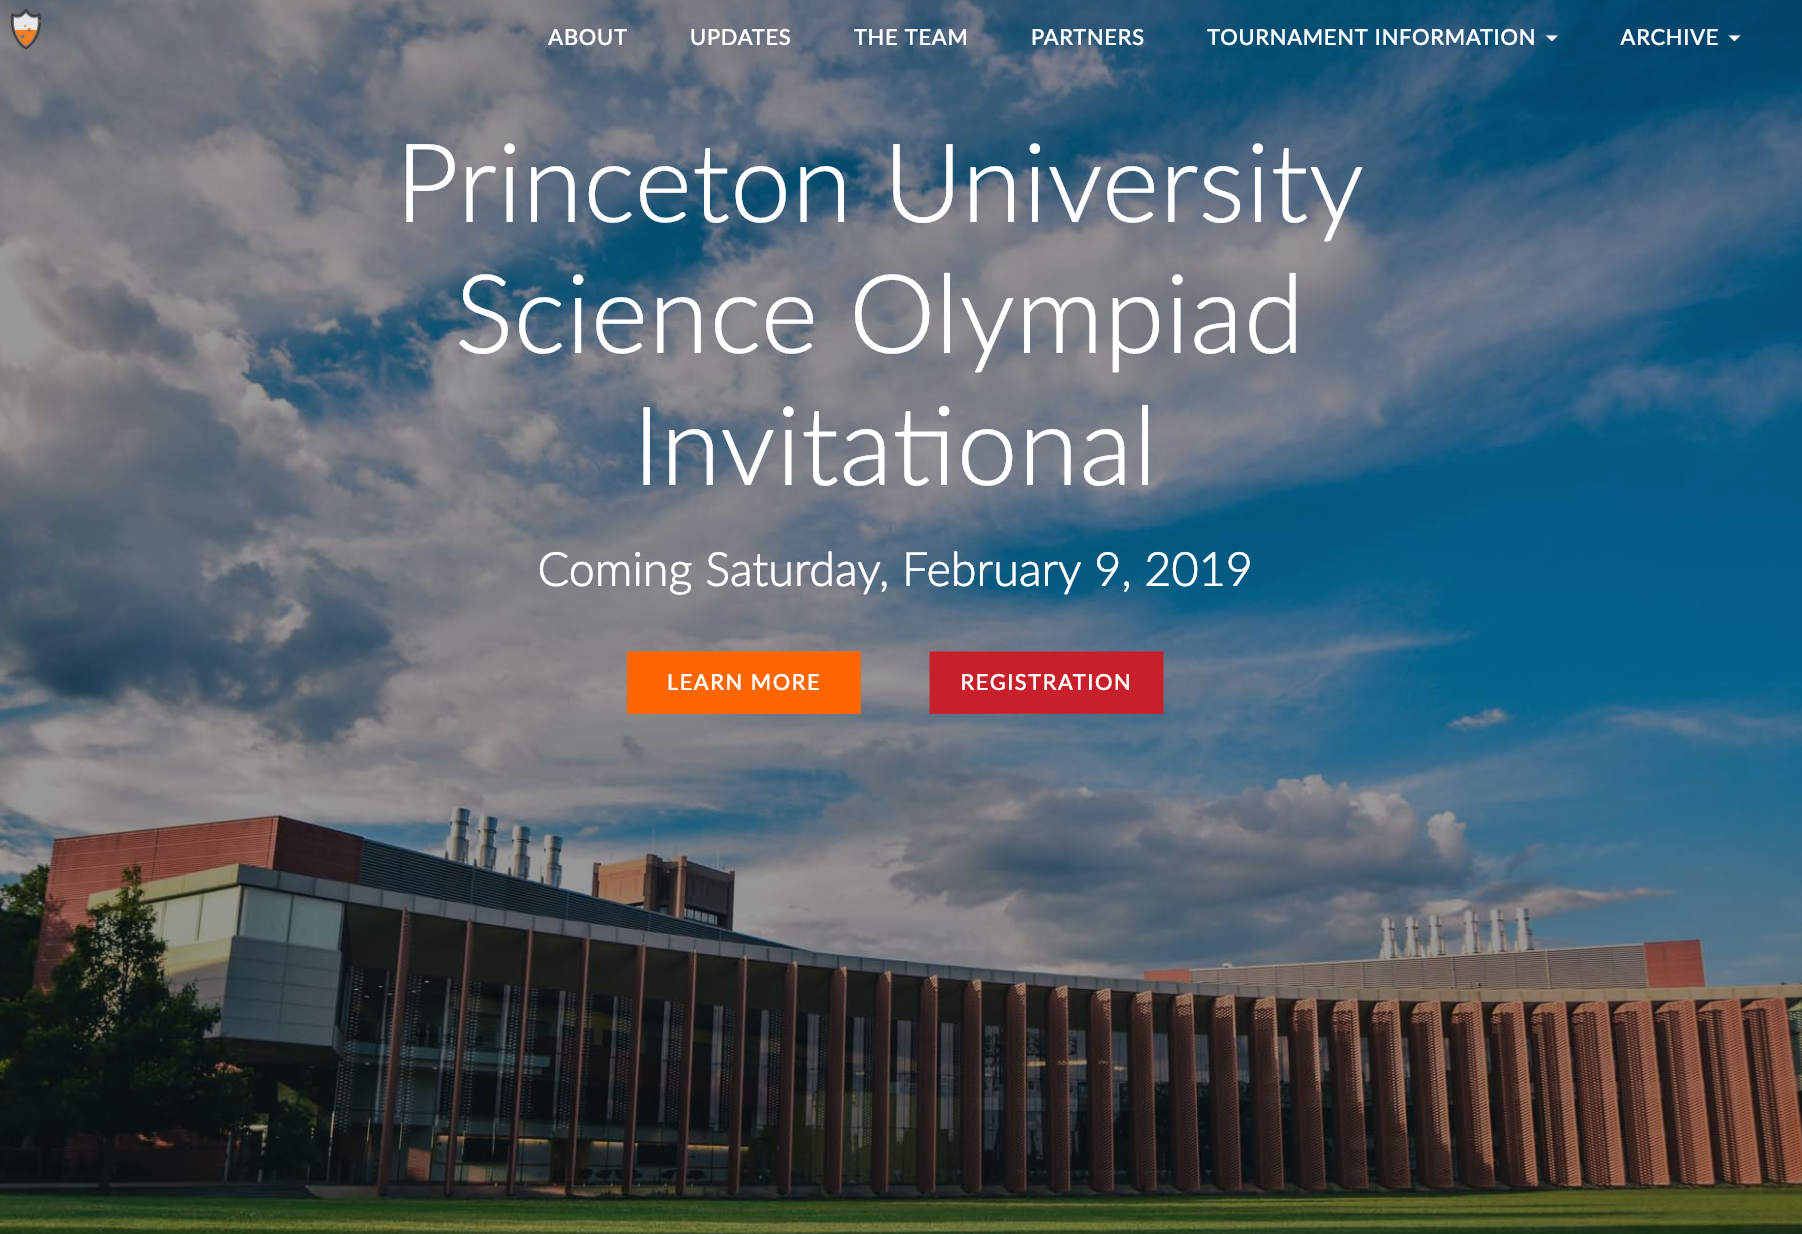 Princeton University Science Olympiad